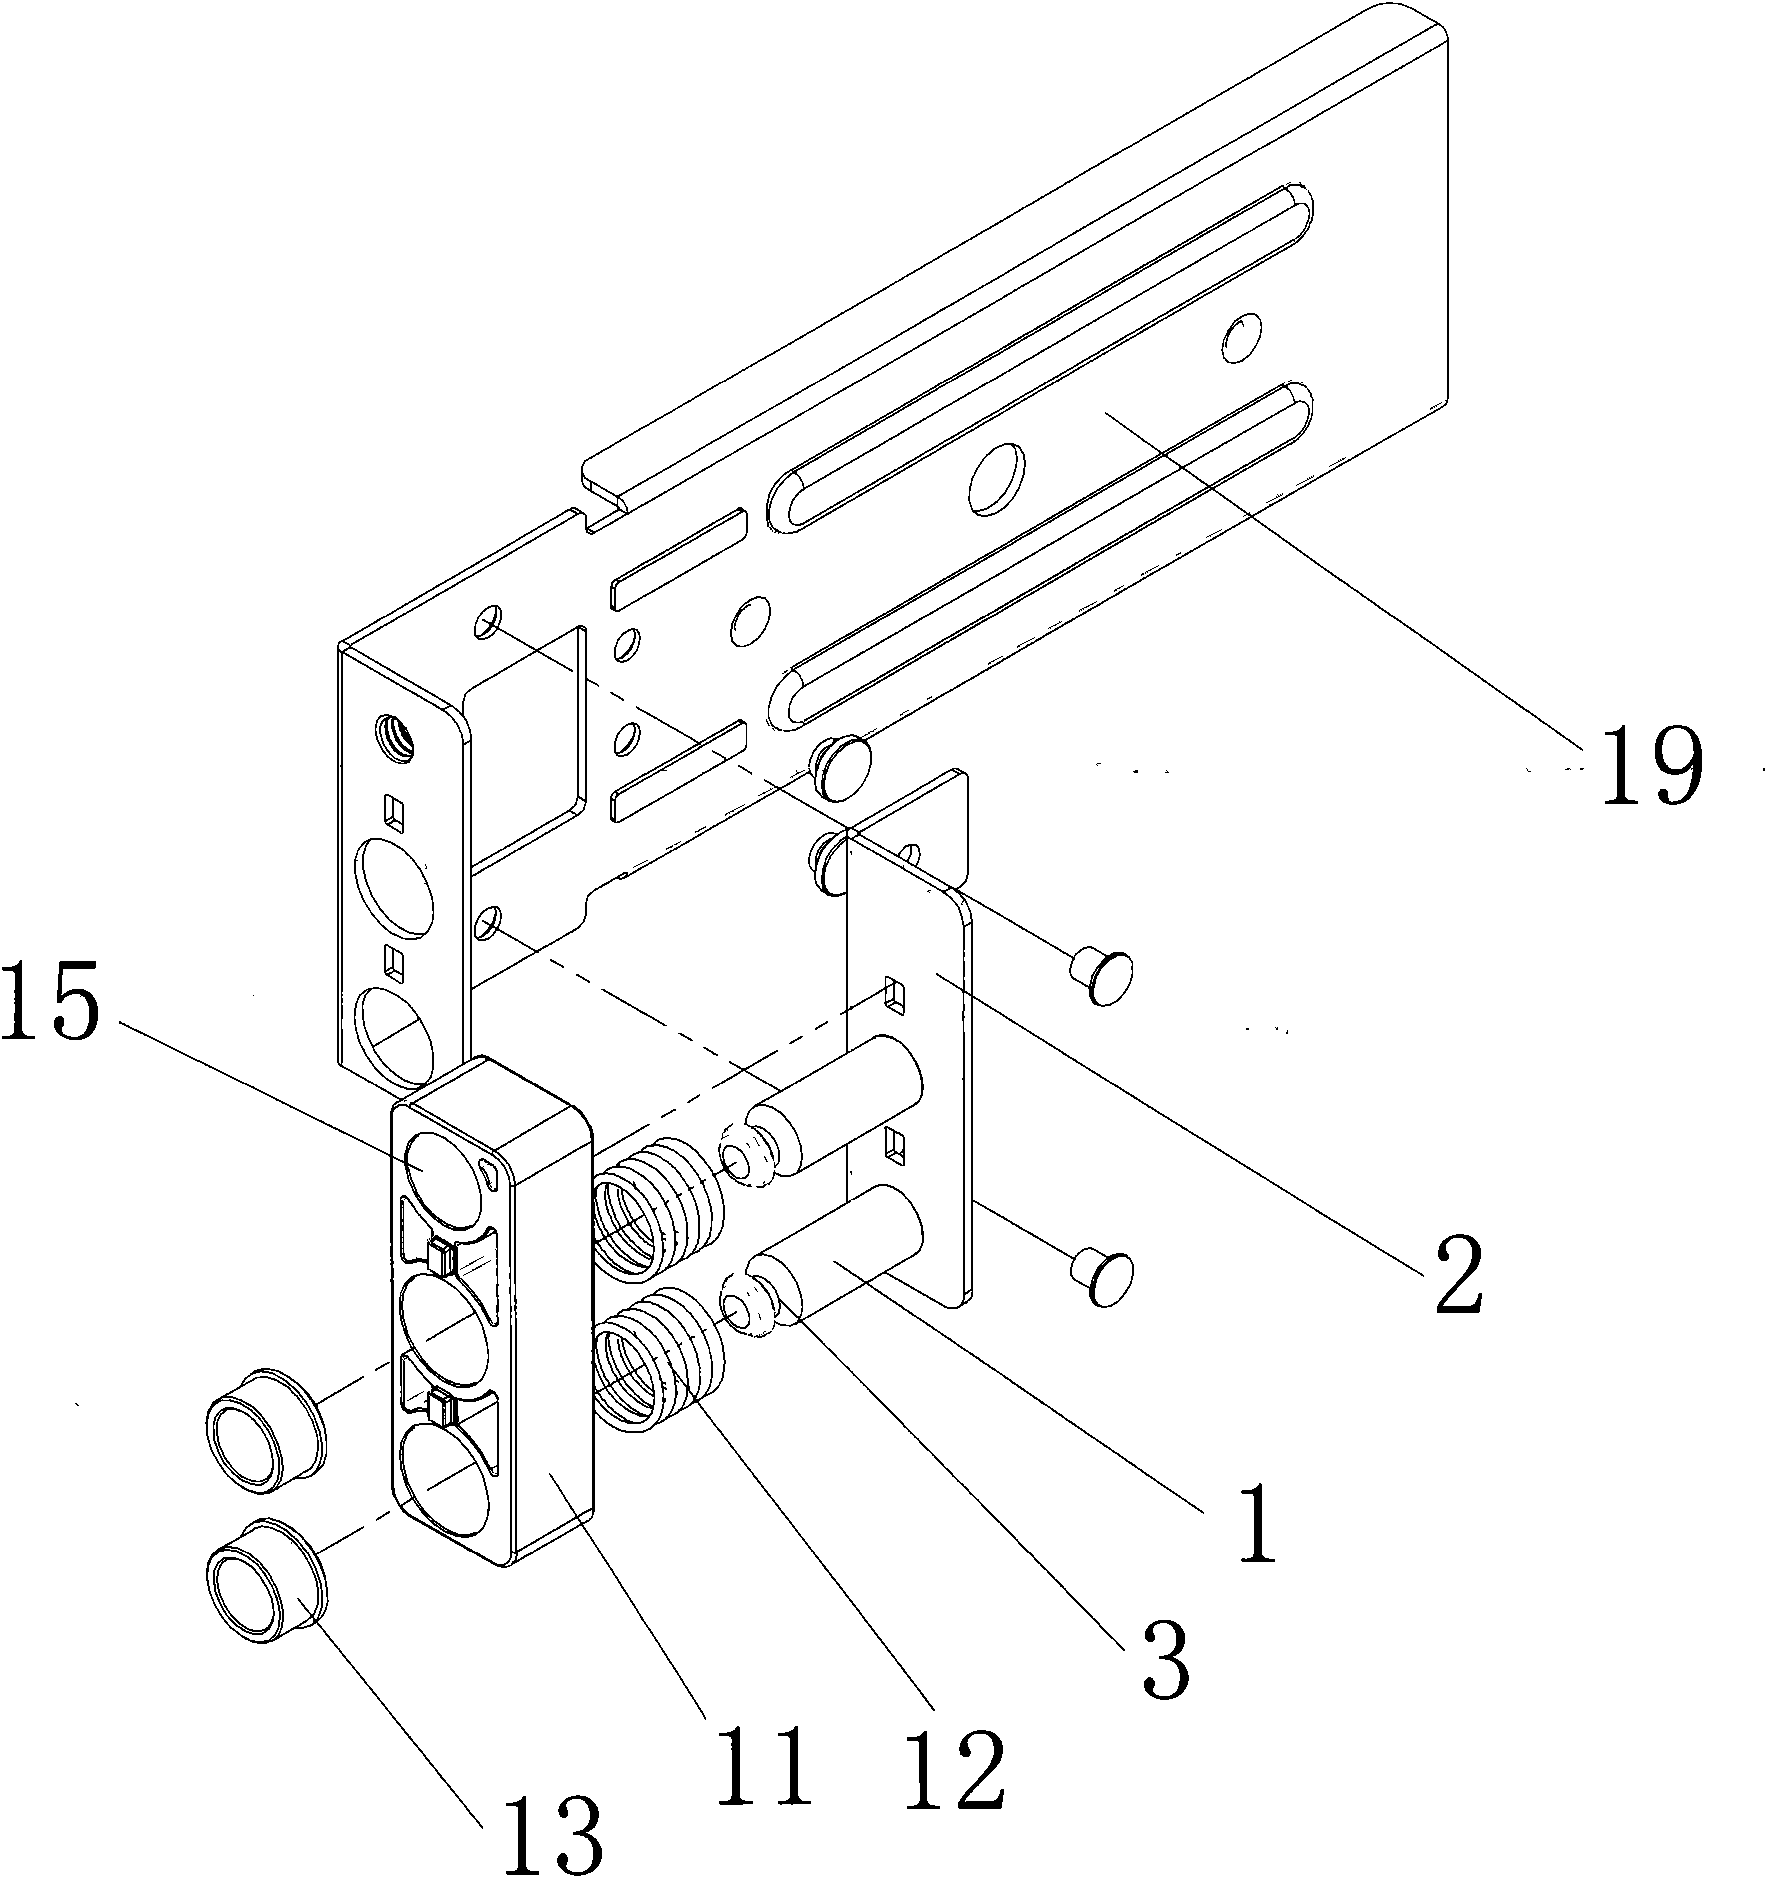 Locking mechanism for server slide rail